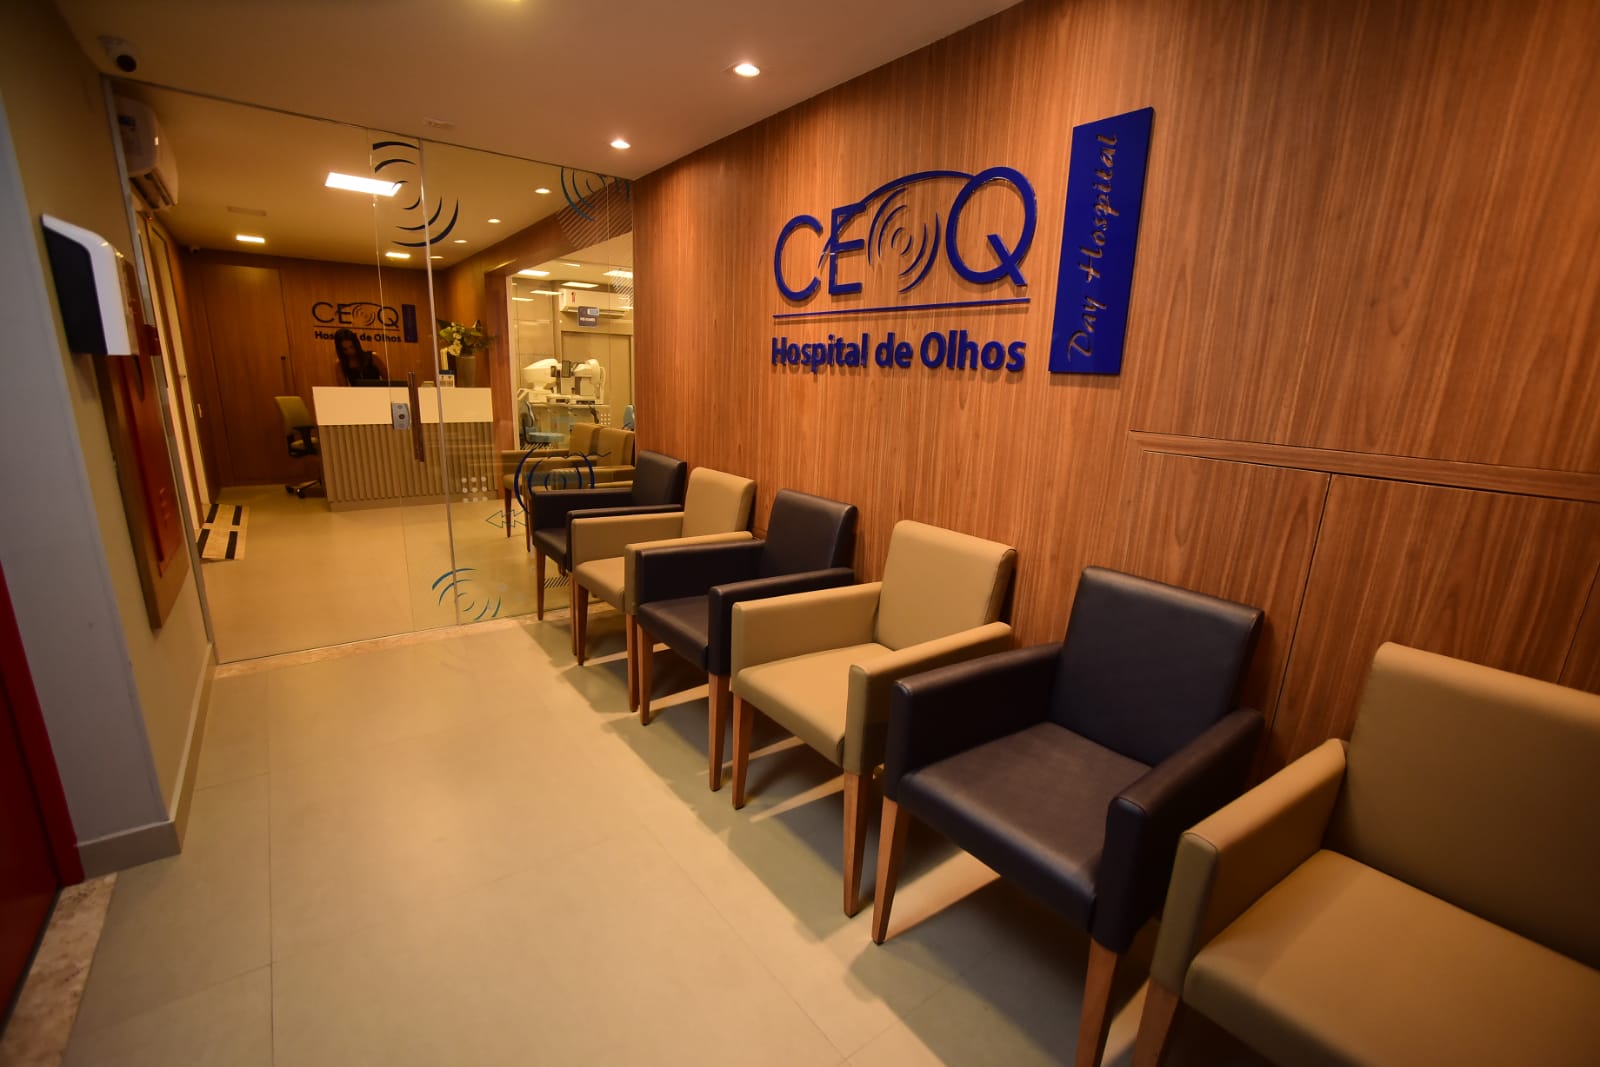 CEOQ Hospital de Olhos      